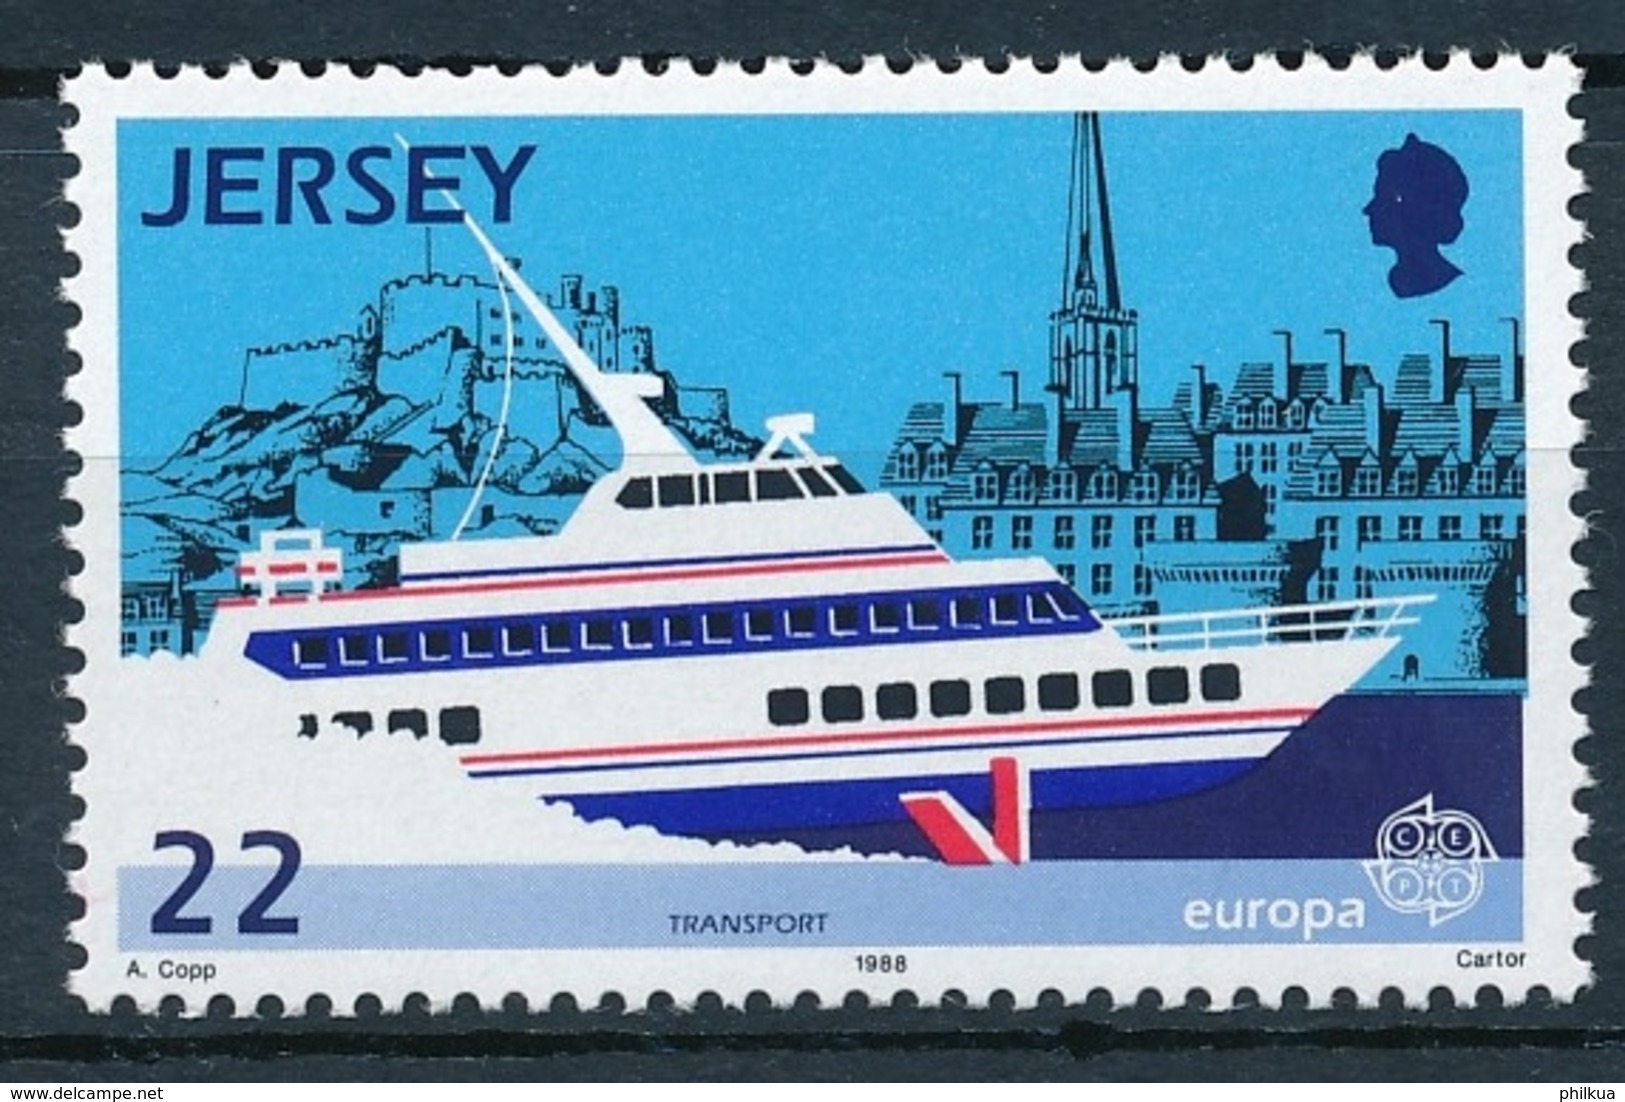 Jersey - Postfrisch/** - Schiffe, Seefahrt, Segelschiffe, Etc. / Ships, Seafaring, Sailing Ships - Schiffahrt